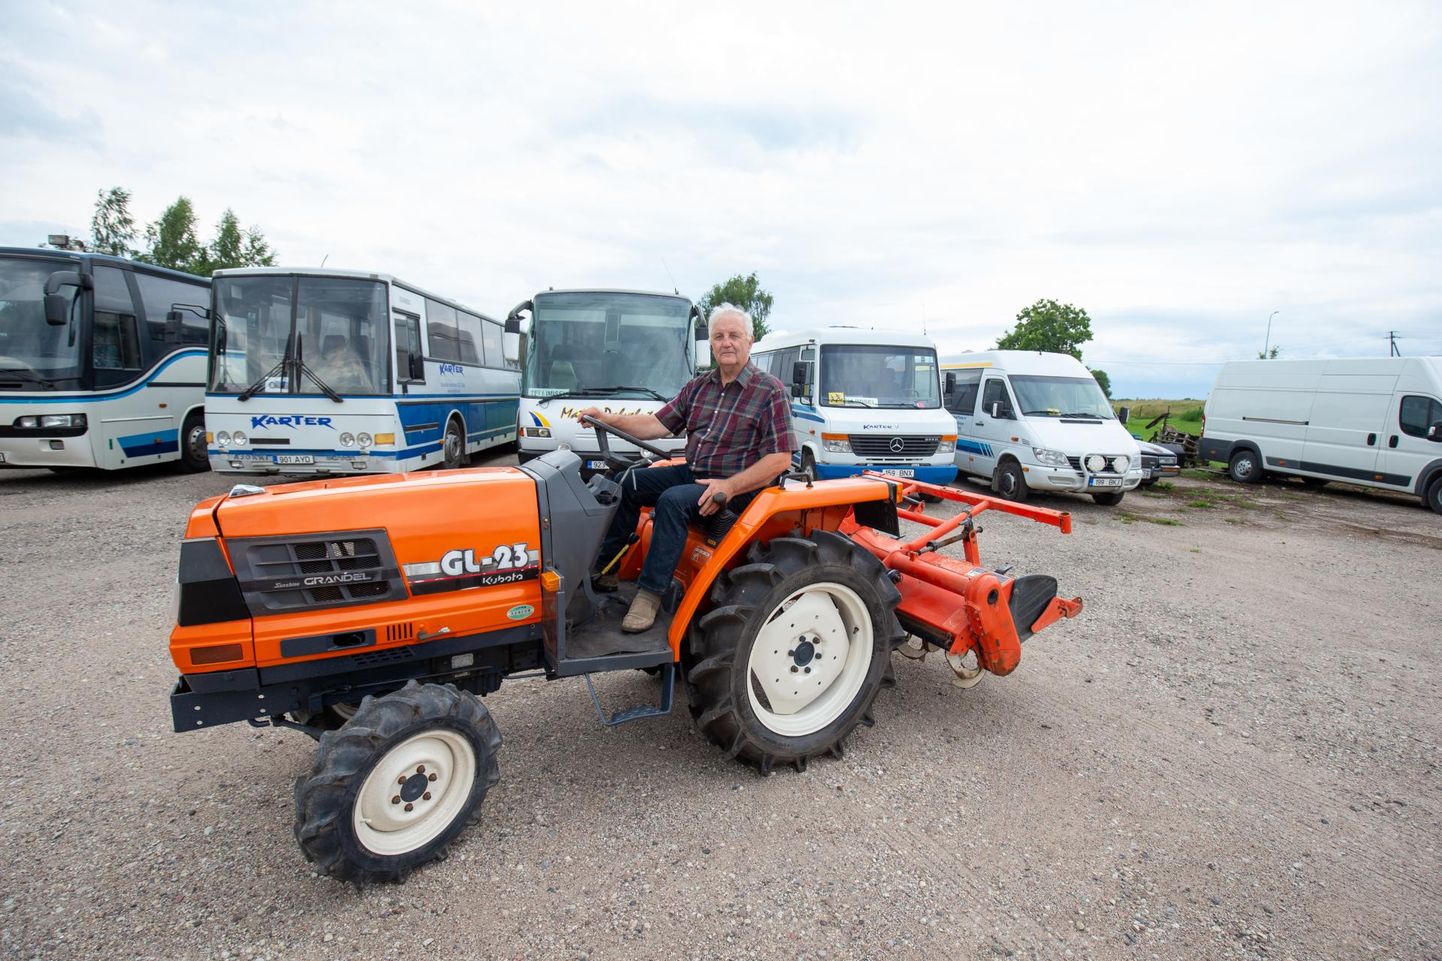 Osaühingu Karter juht Heino Tafenau poseerib koos ainsa praegu müügil oleva traktoriga. Tagaplaanil seisavad bussid, mis tellimuste puudumise tõttu pole saanud sõidus käia.